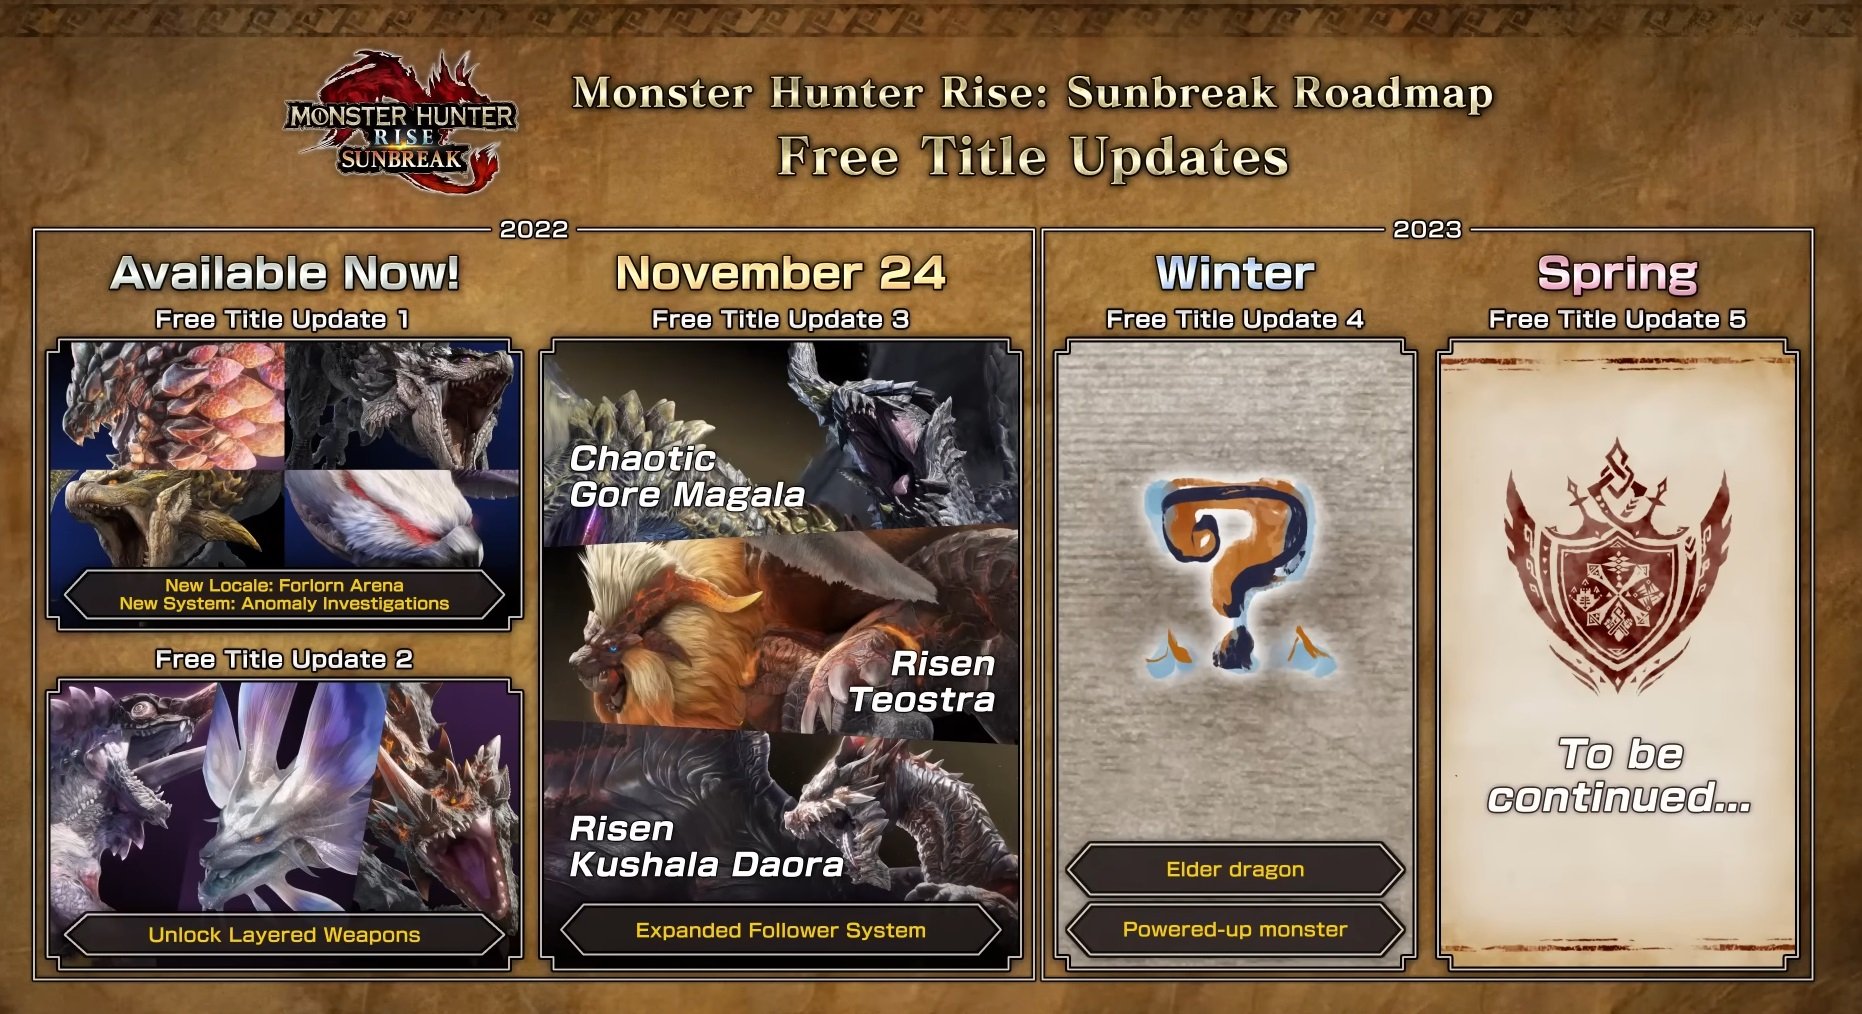 Monster Hunter Rise 2023 roadmap